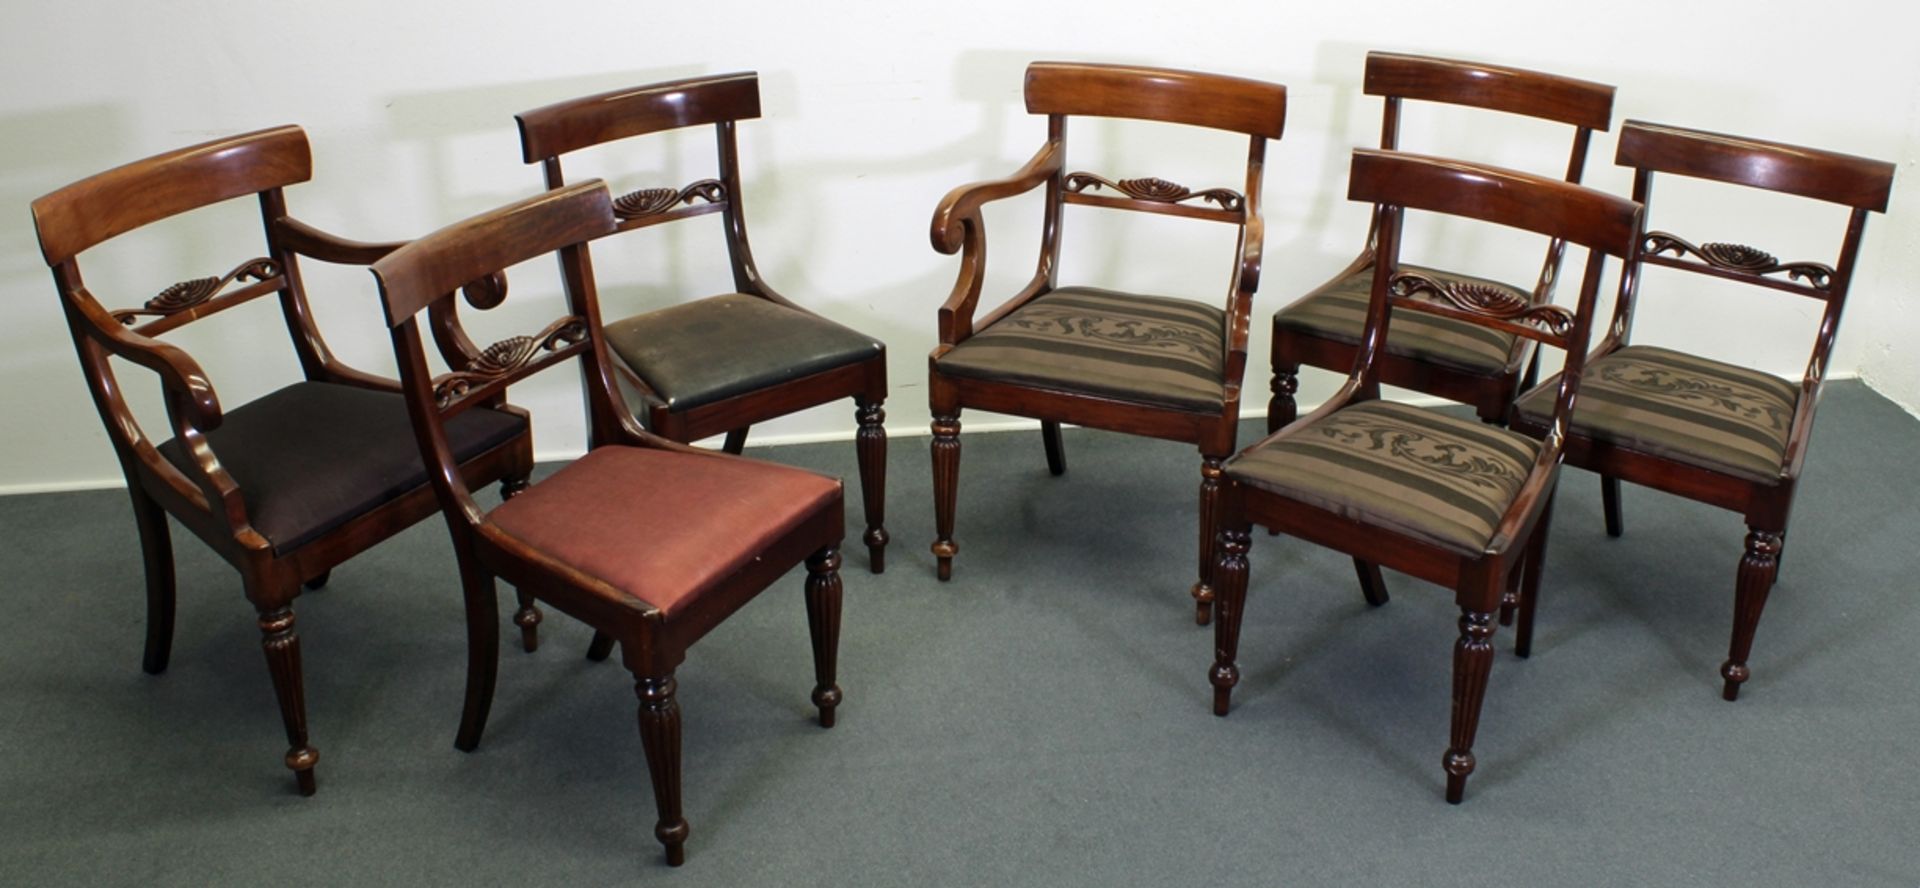 7 Stühle, William IV.-Stil, England, 19./20. Jh., Mahagoni, davon zwei Armlehnstühle, vordere Beine